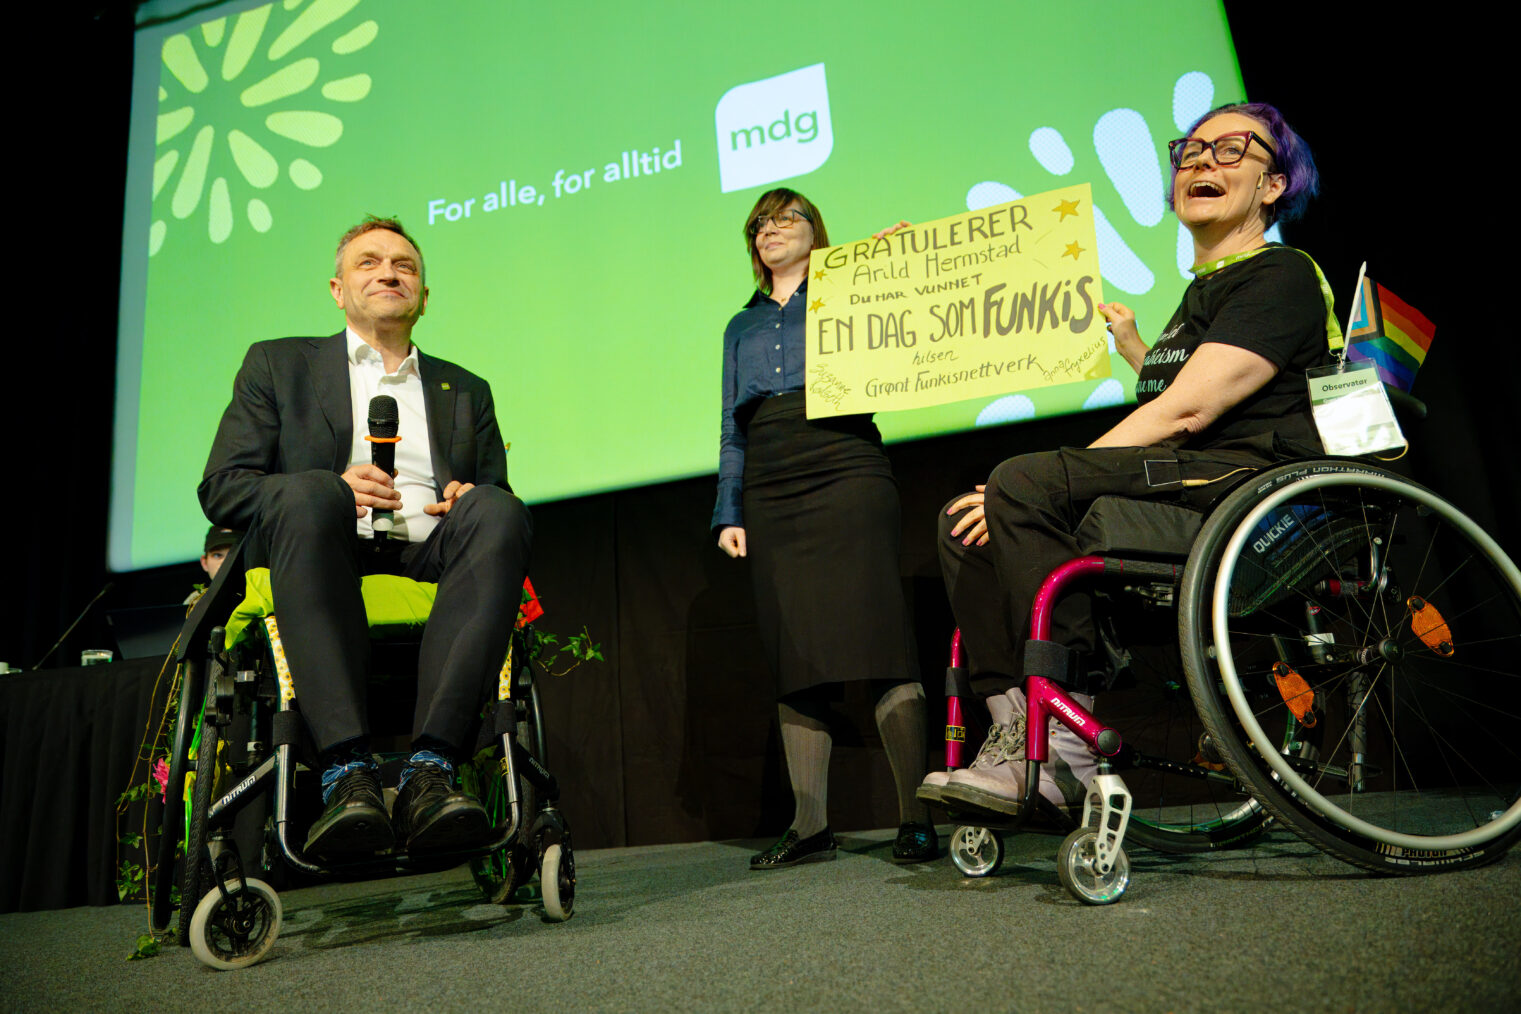 Arild Hermstad i rullestol ved siden av to kvinner med plakaten "Gratulerer! Du har vunnet en dag som funkis"